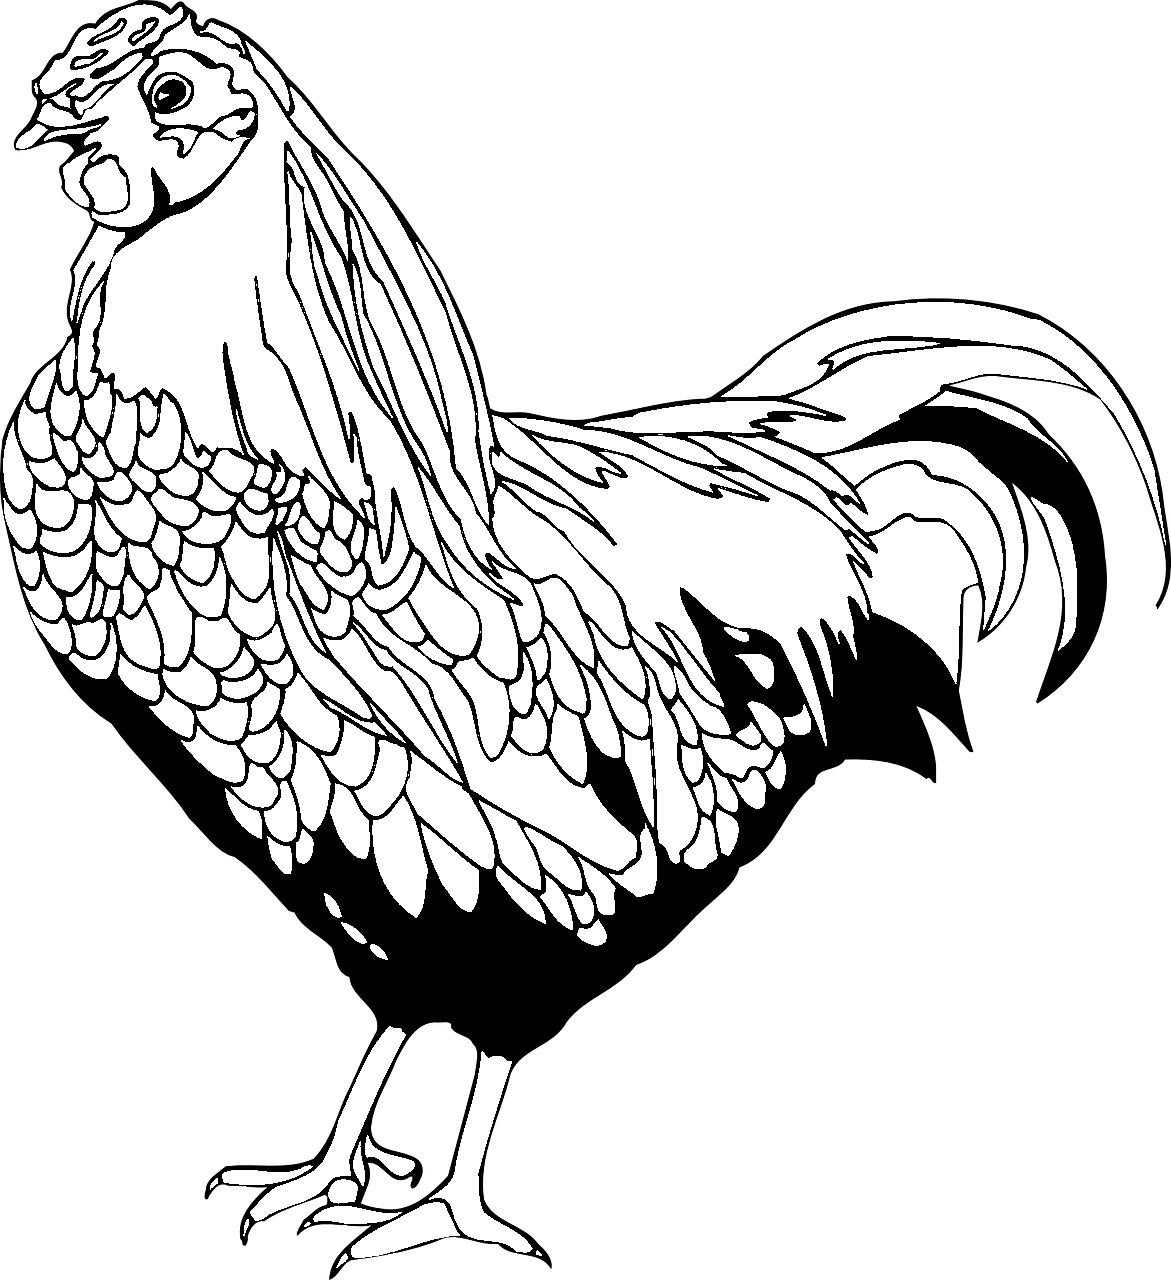 Dibujo para colorear de una gallina